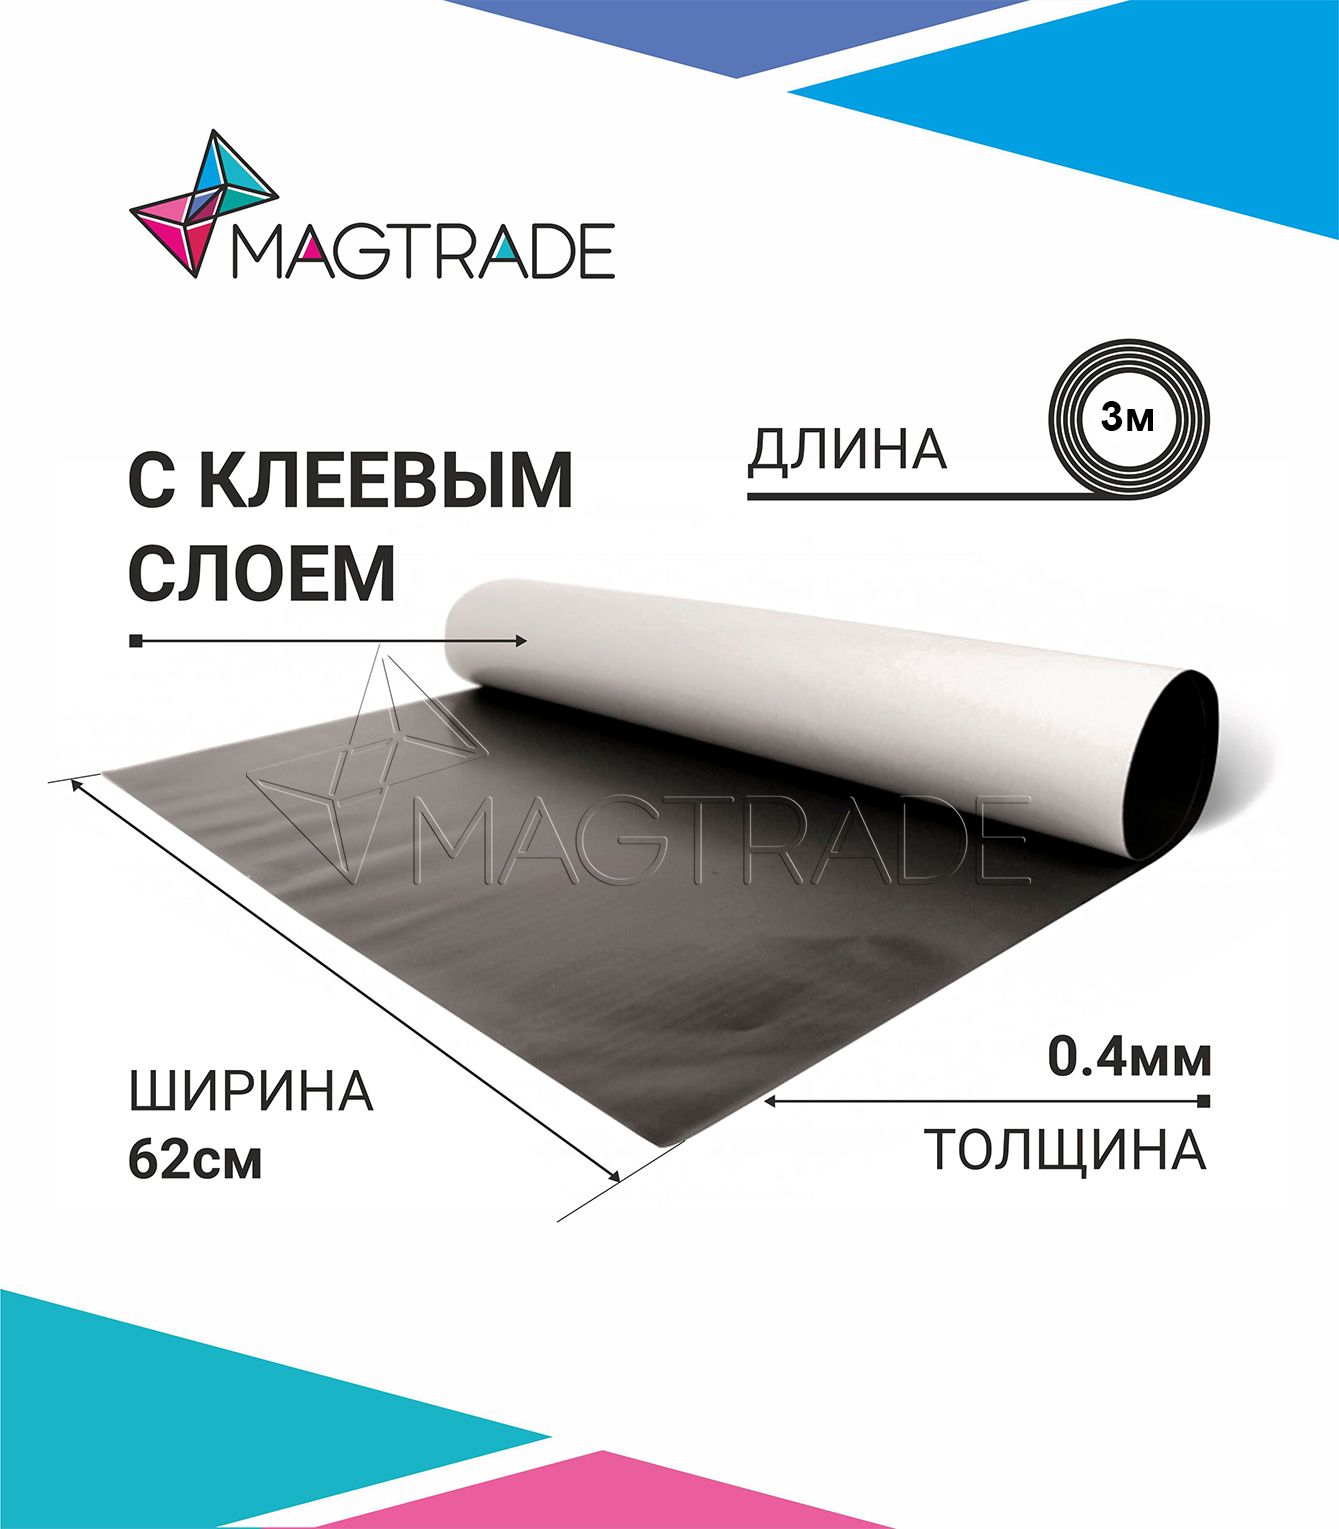 Магнитный винил MAGTRADE с клеевым слоем 0,62 х 3 м, толщина 0,4 мм, лист 3 метра магнитный винил magtrade с клеем толщина 0 9 мм лист 5м